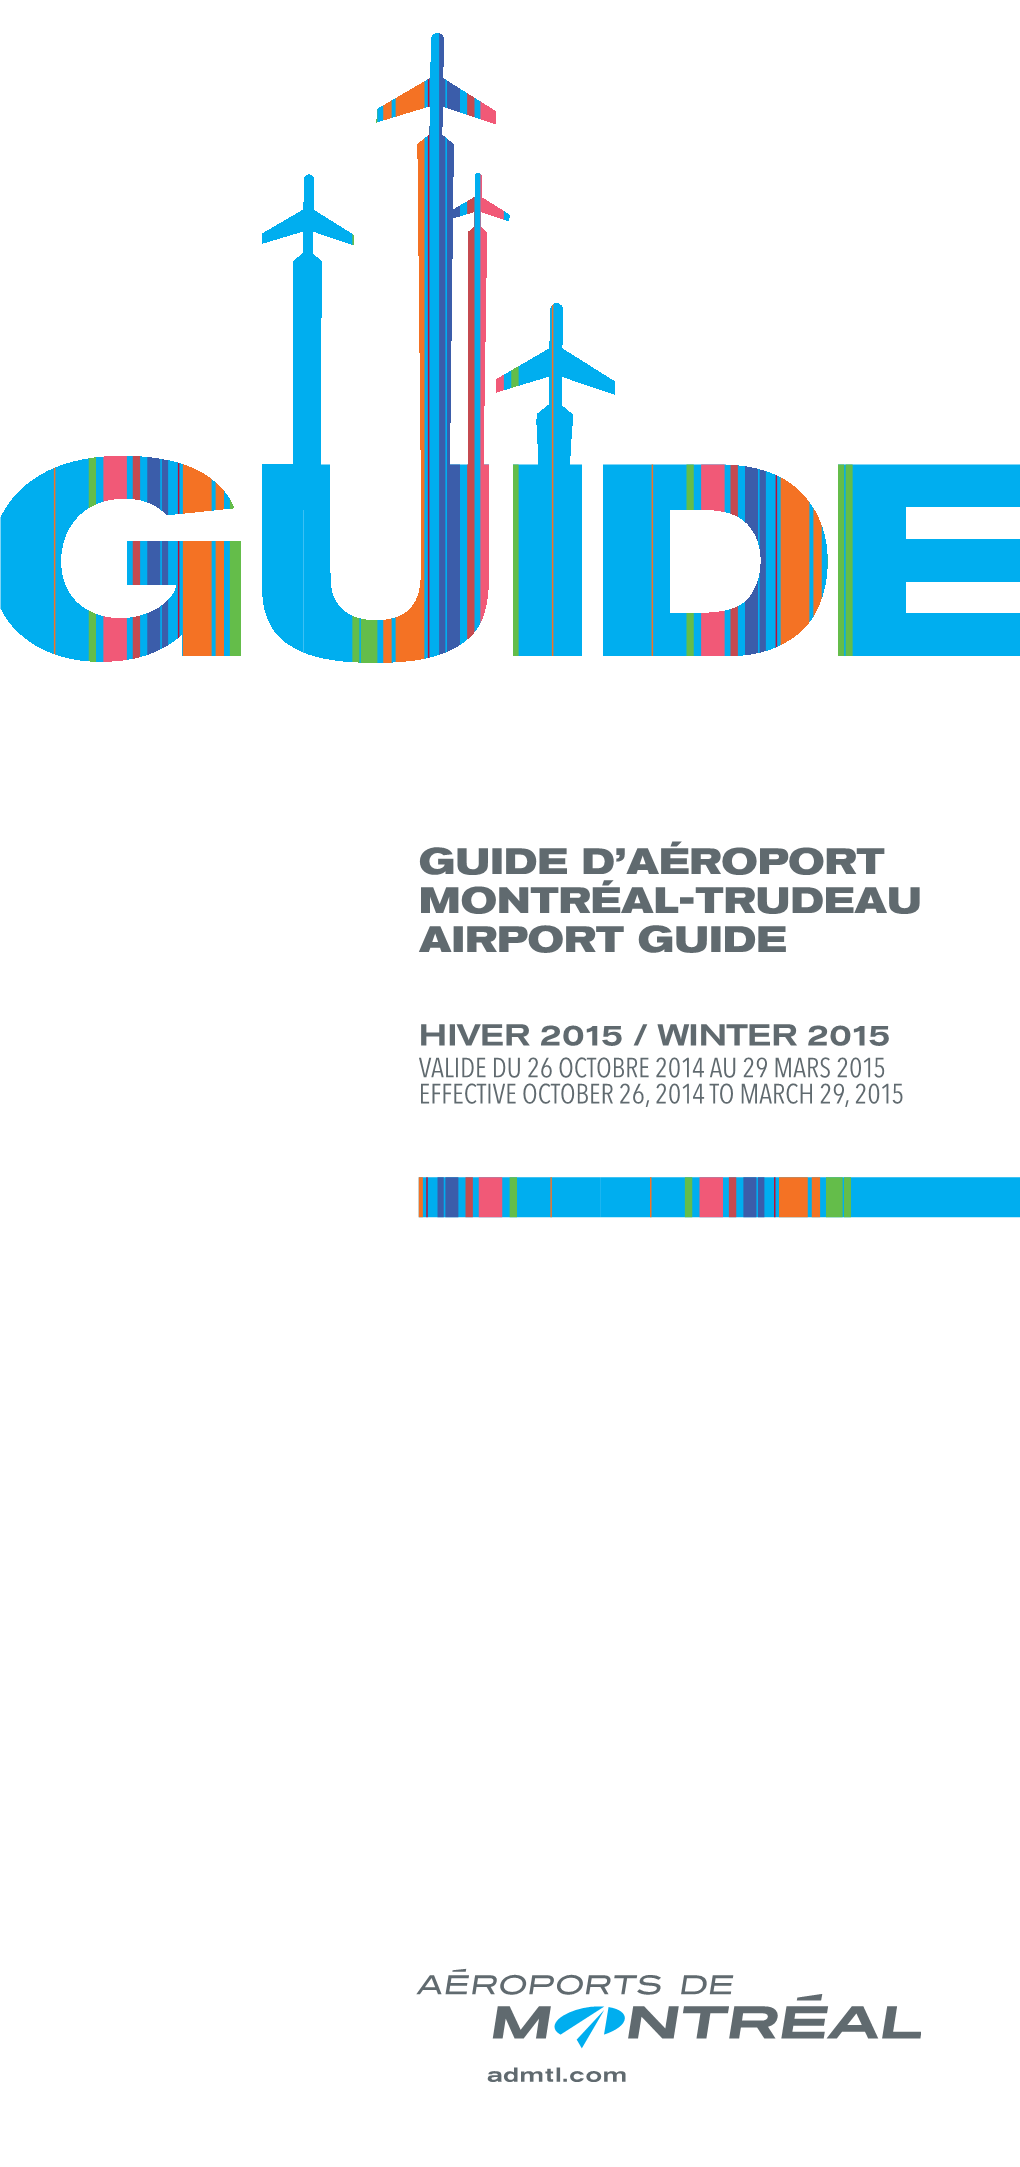 Guide D'aéroport Montréal-Trudeau Airport